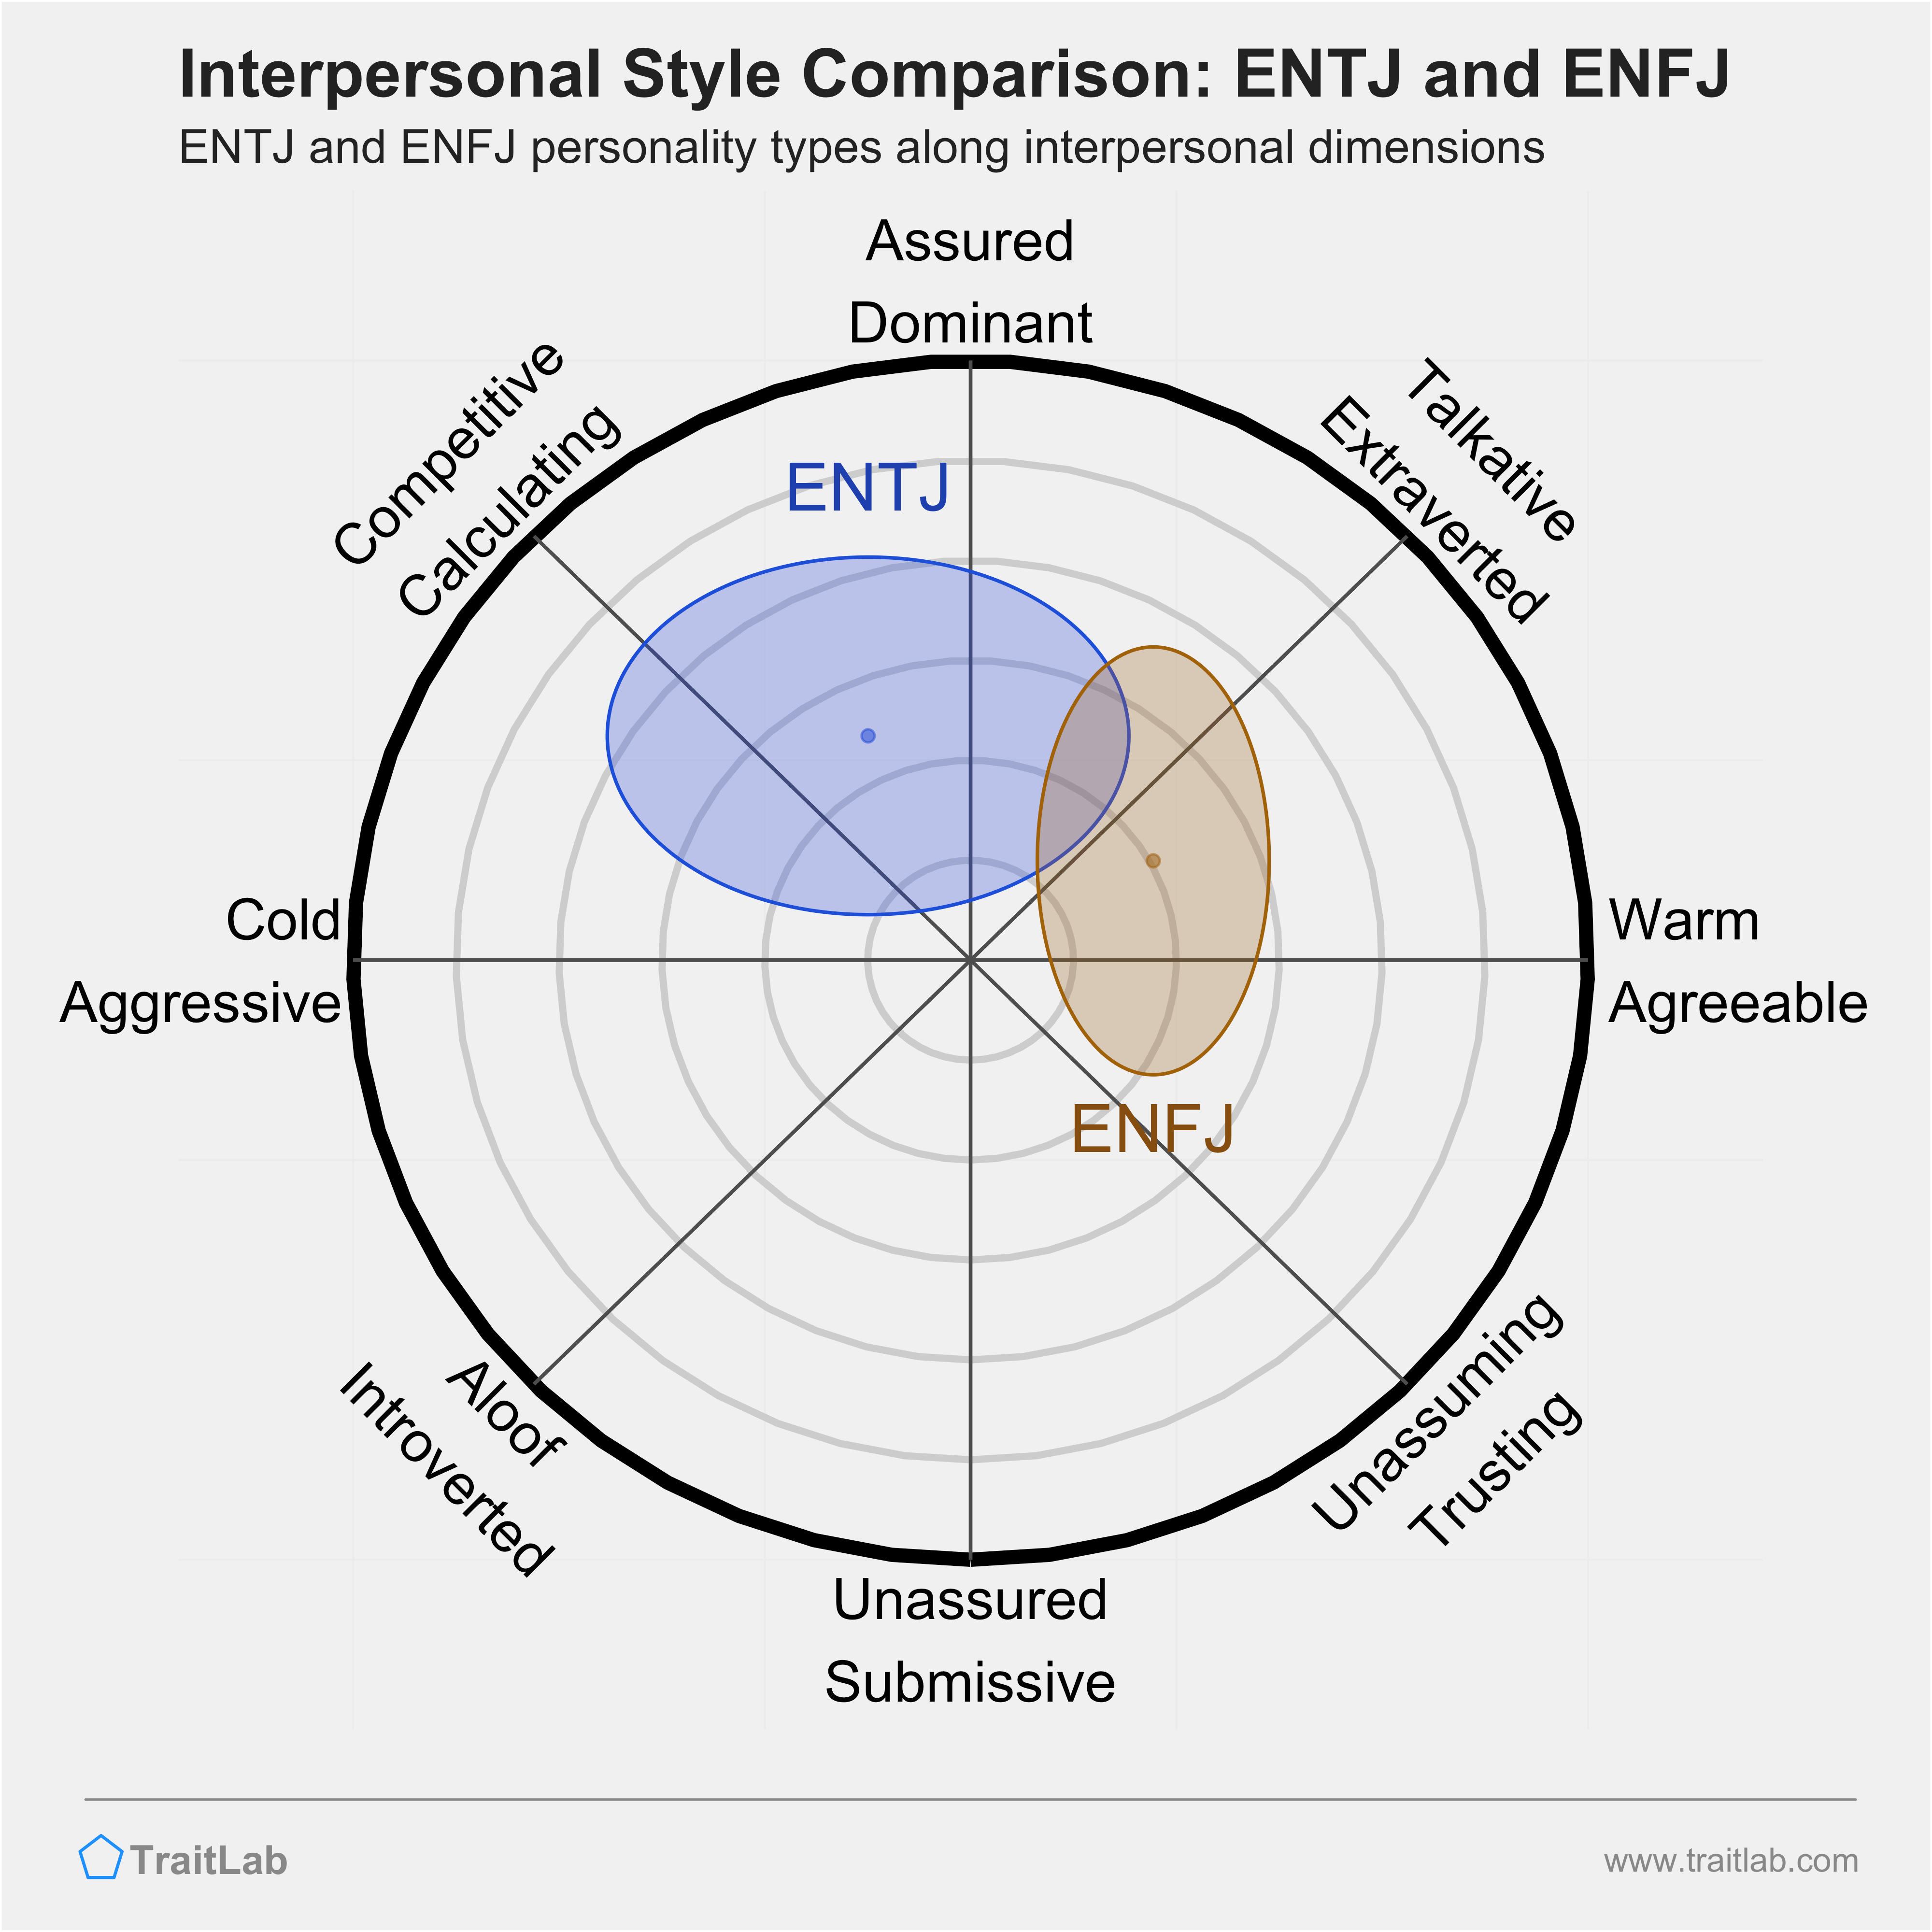 ENTJ and ENFJ comparison across interpersonal dimensions